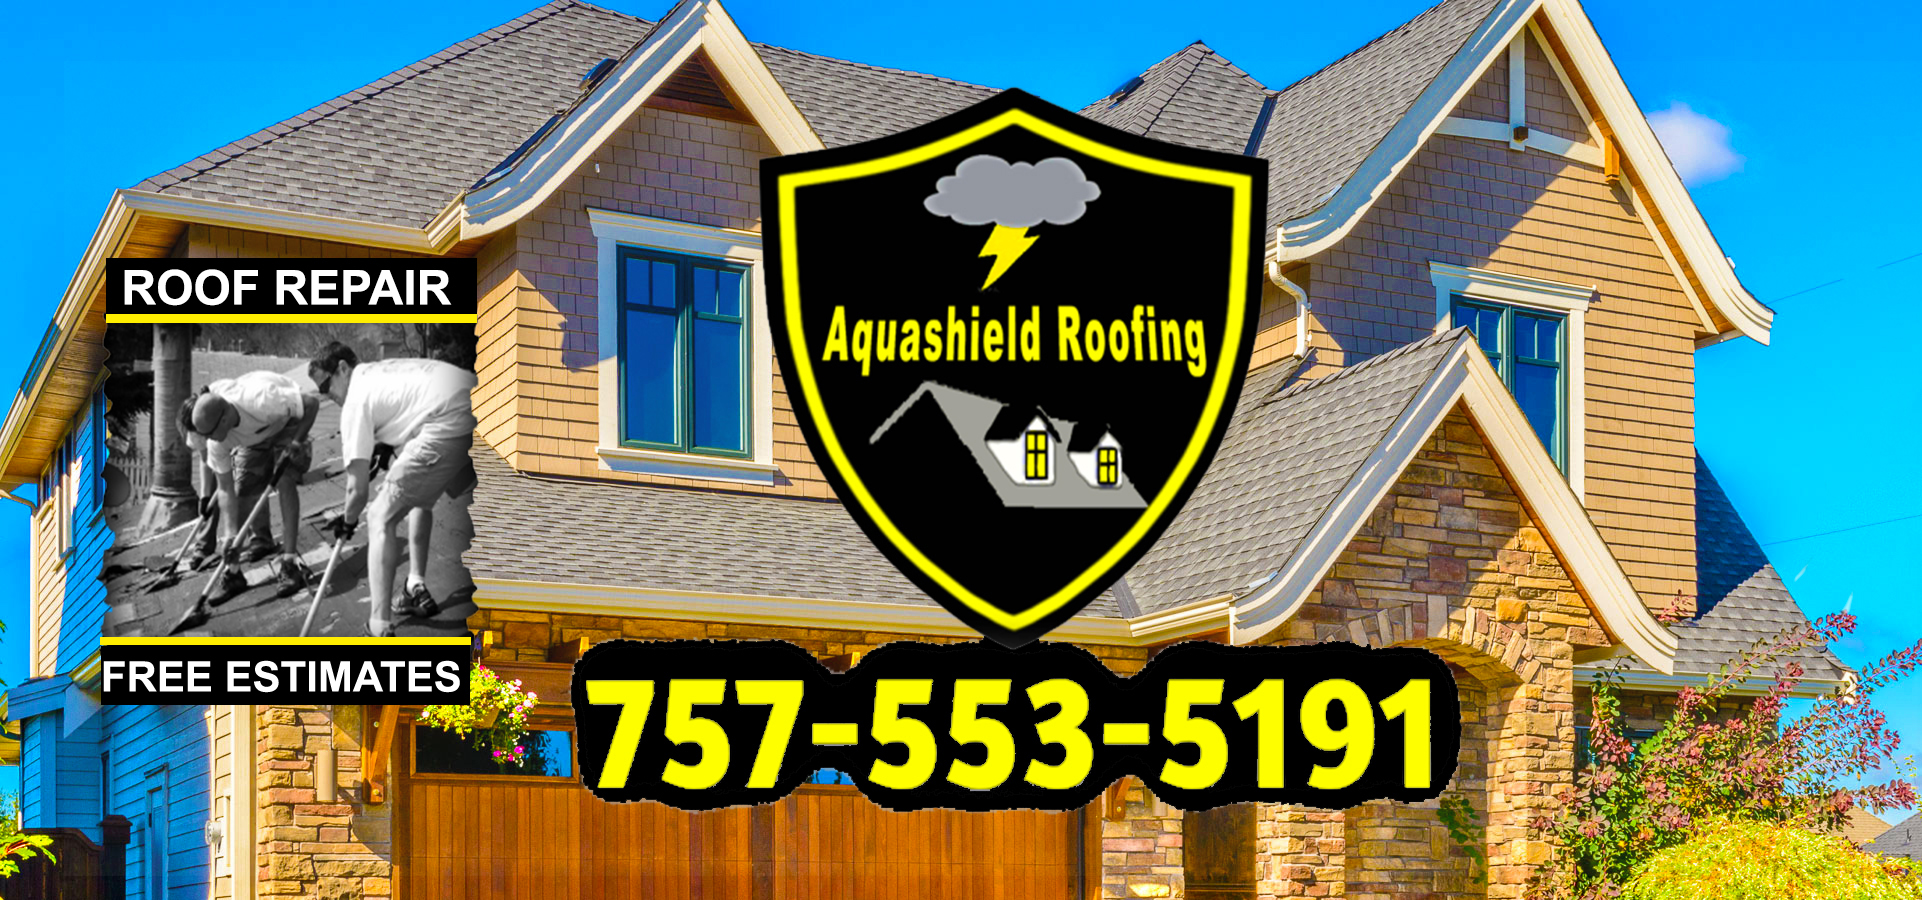 Roofers in Chesapeake - Roof Repair Chesapeake Roof Leak